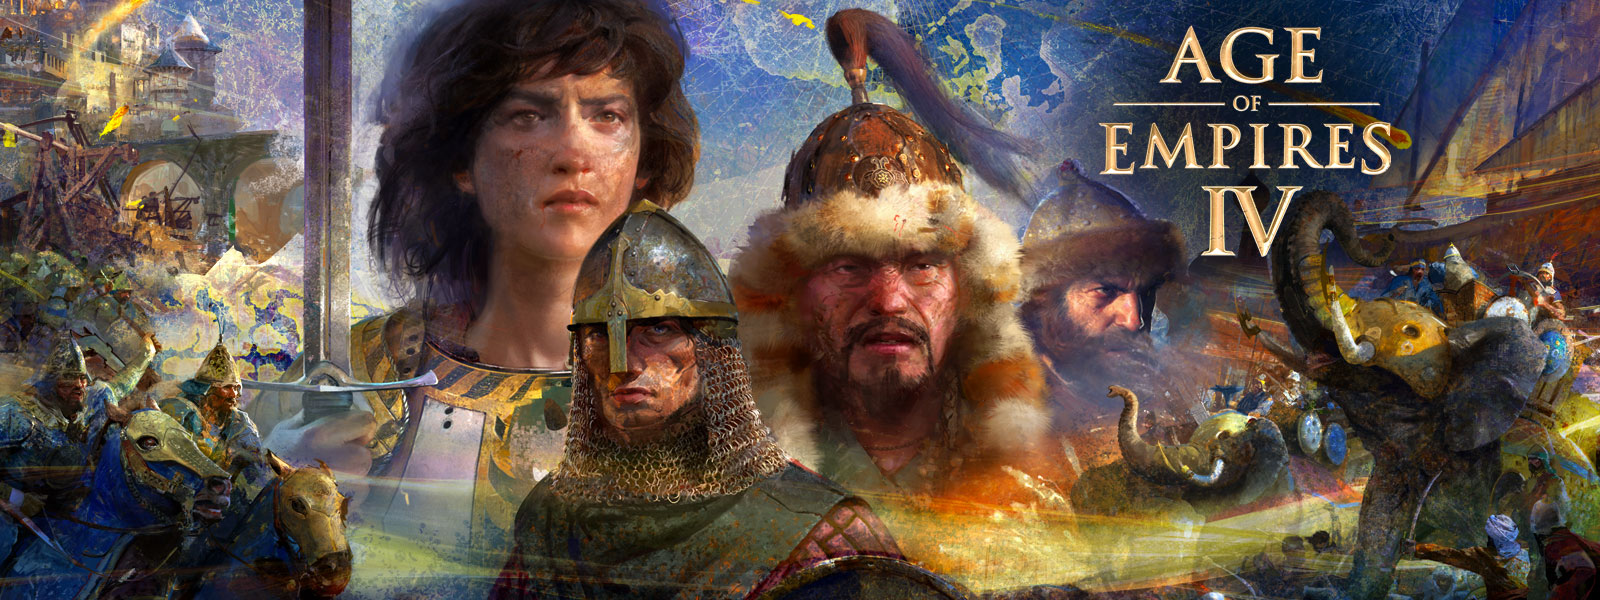 Age of Empires IV. Cztery postacie ze scenami wojny, słoniami, i ludźmi na koniach wokół nich, na tle mapy